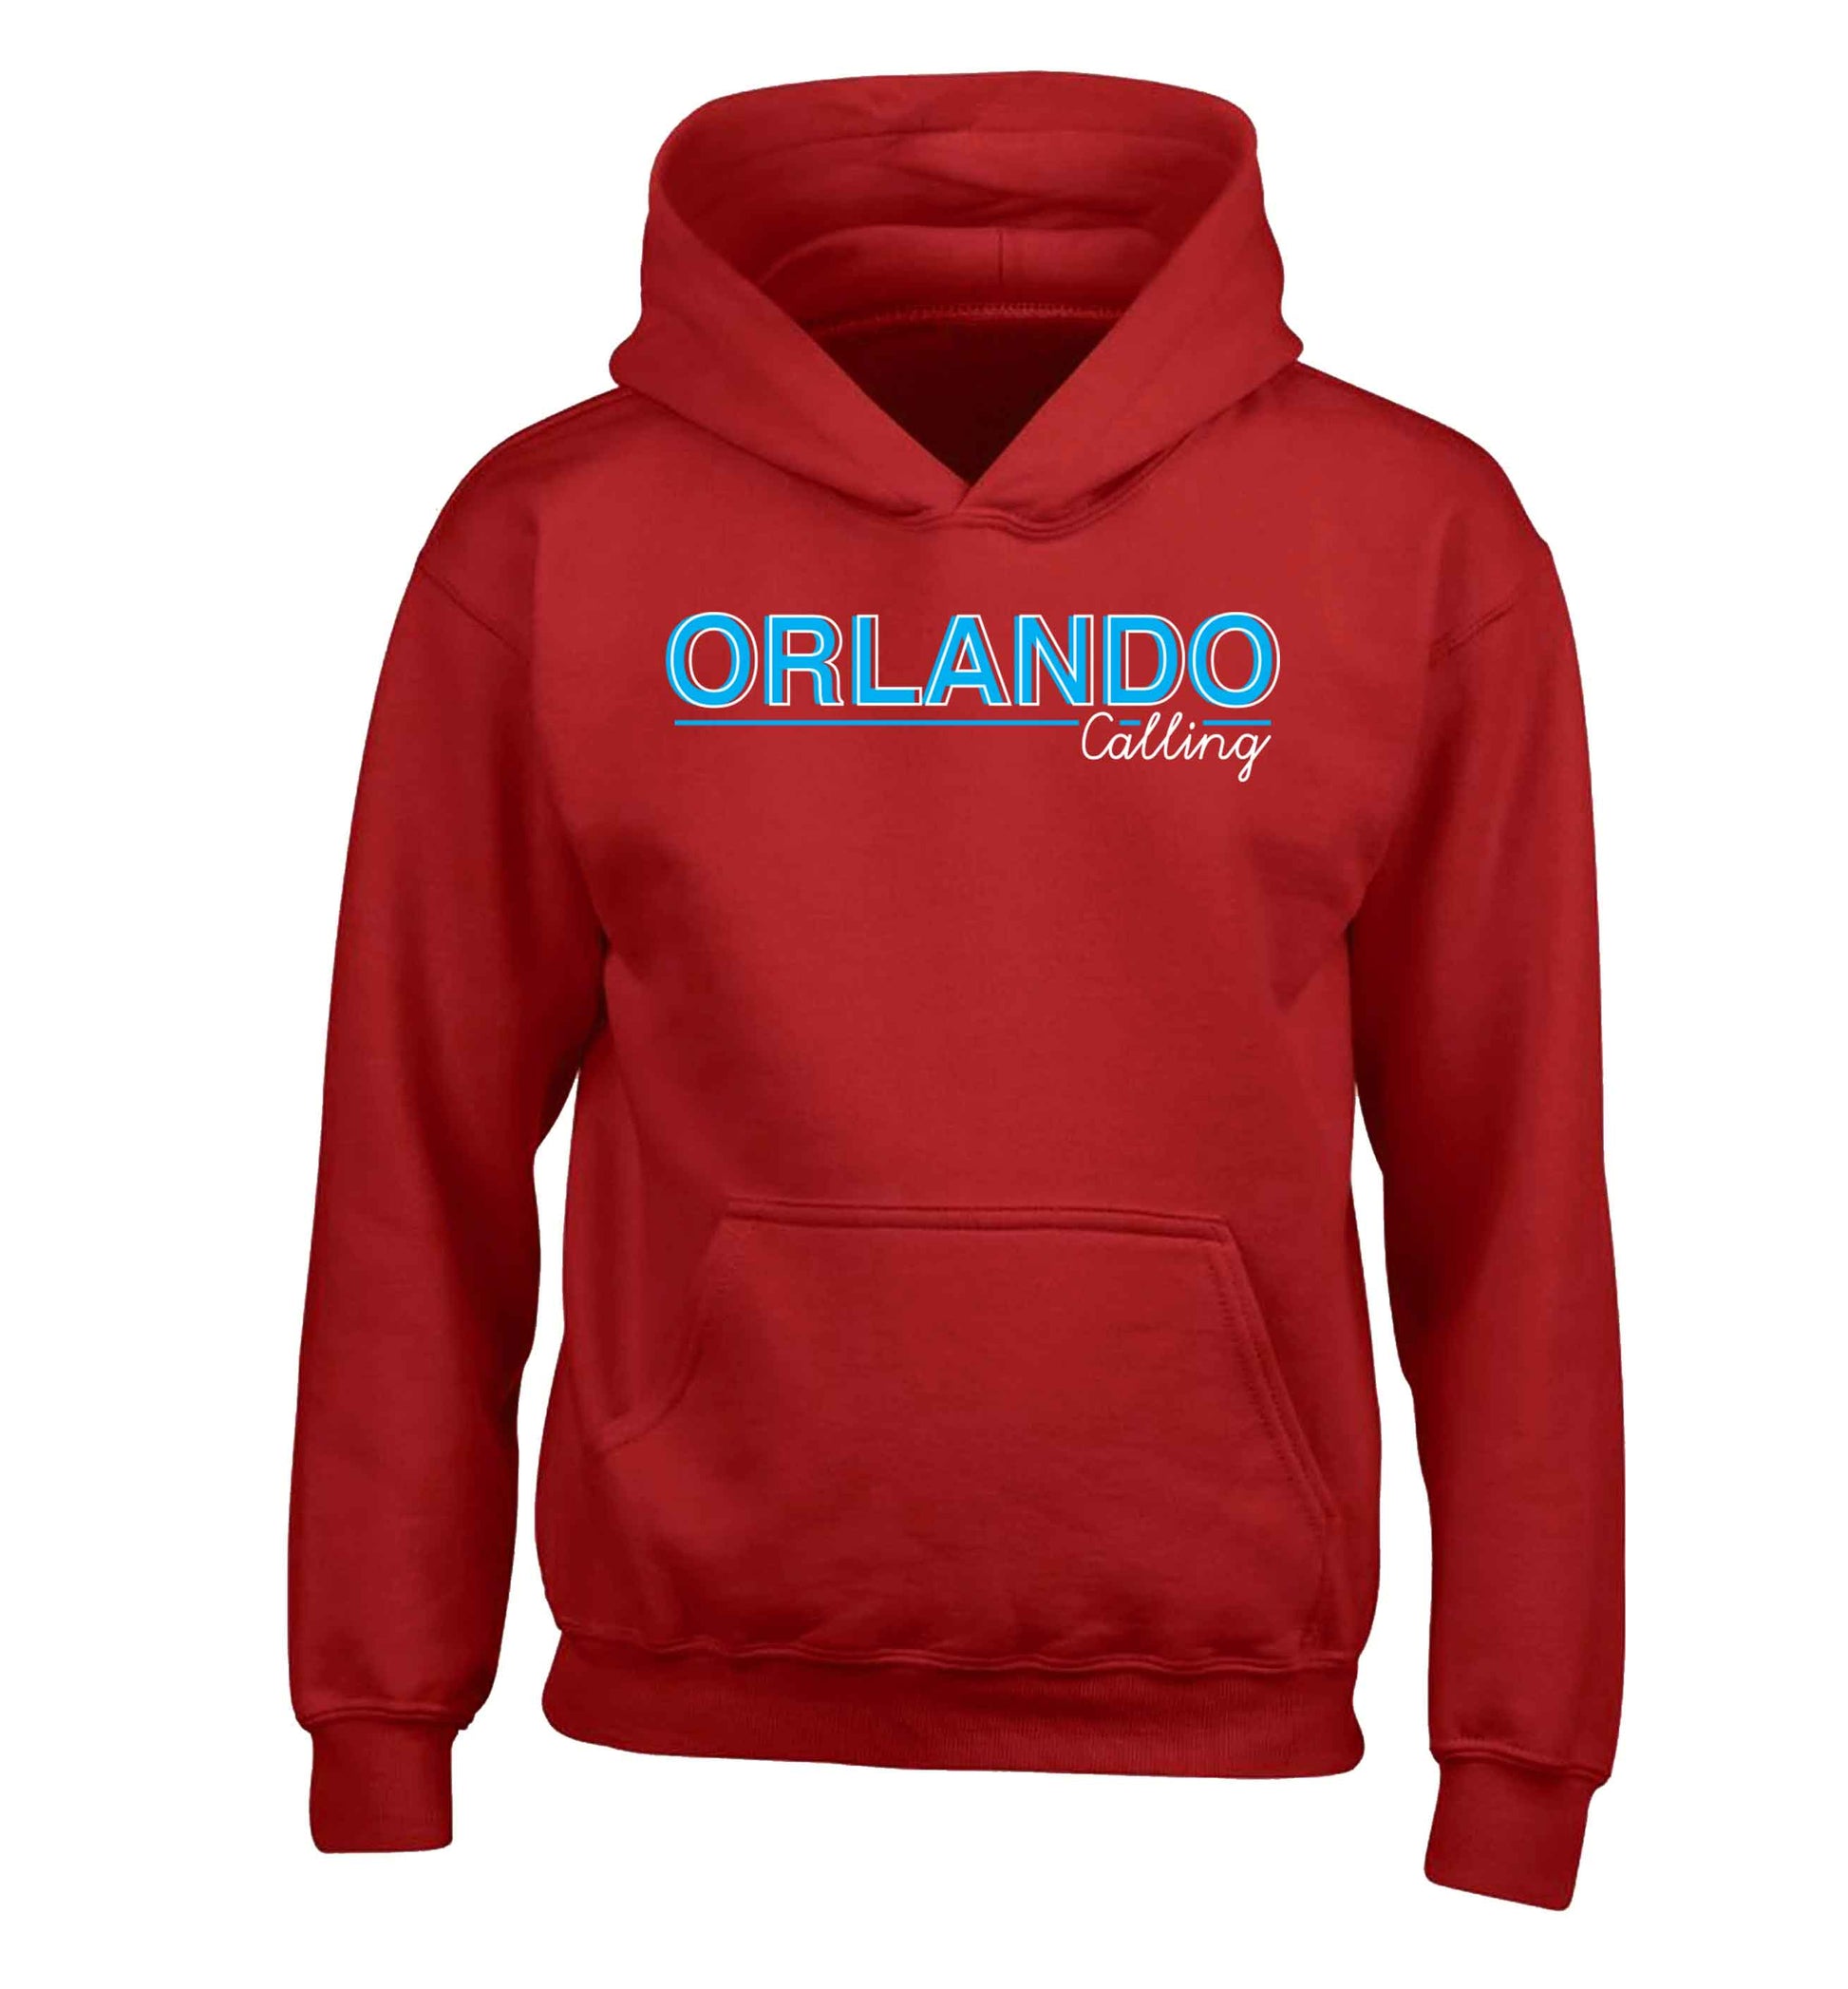 Orlando calling children's red hoodie 12-13 Years